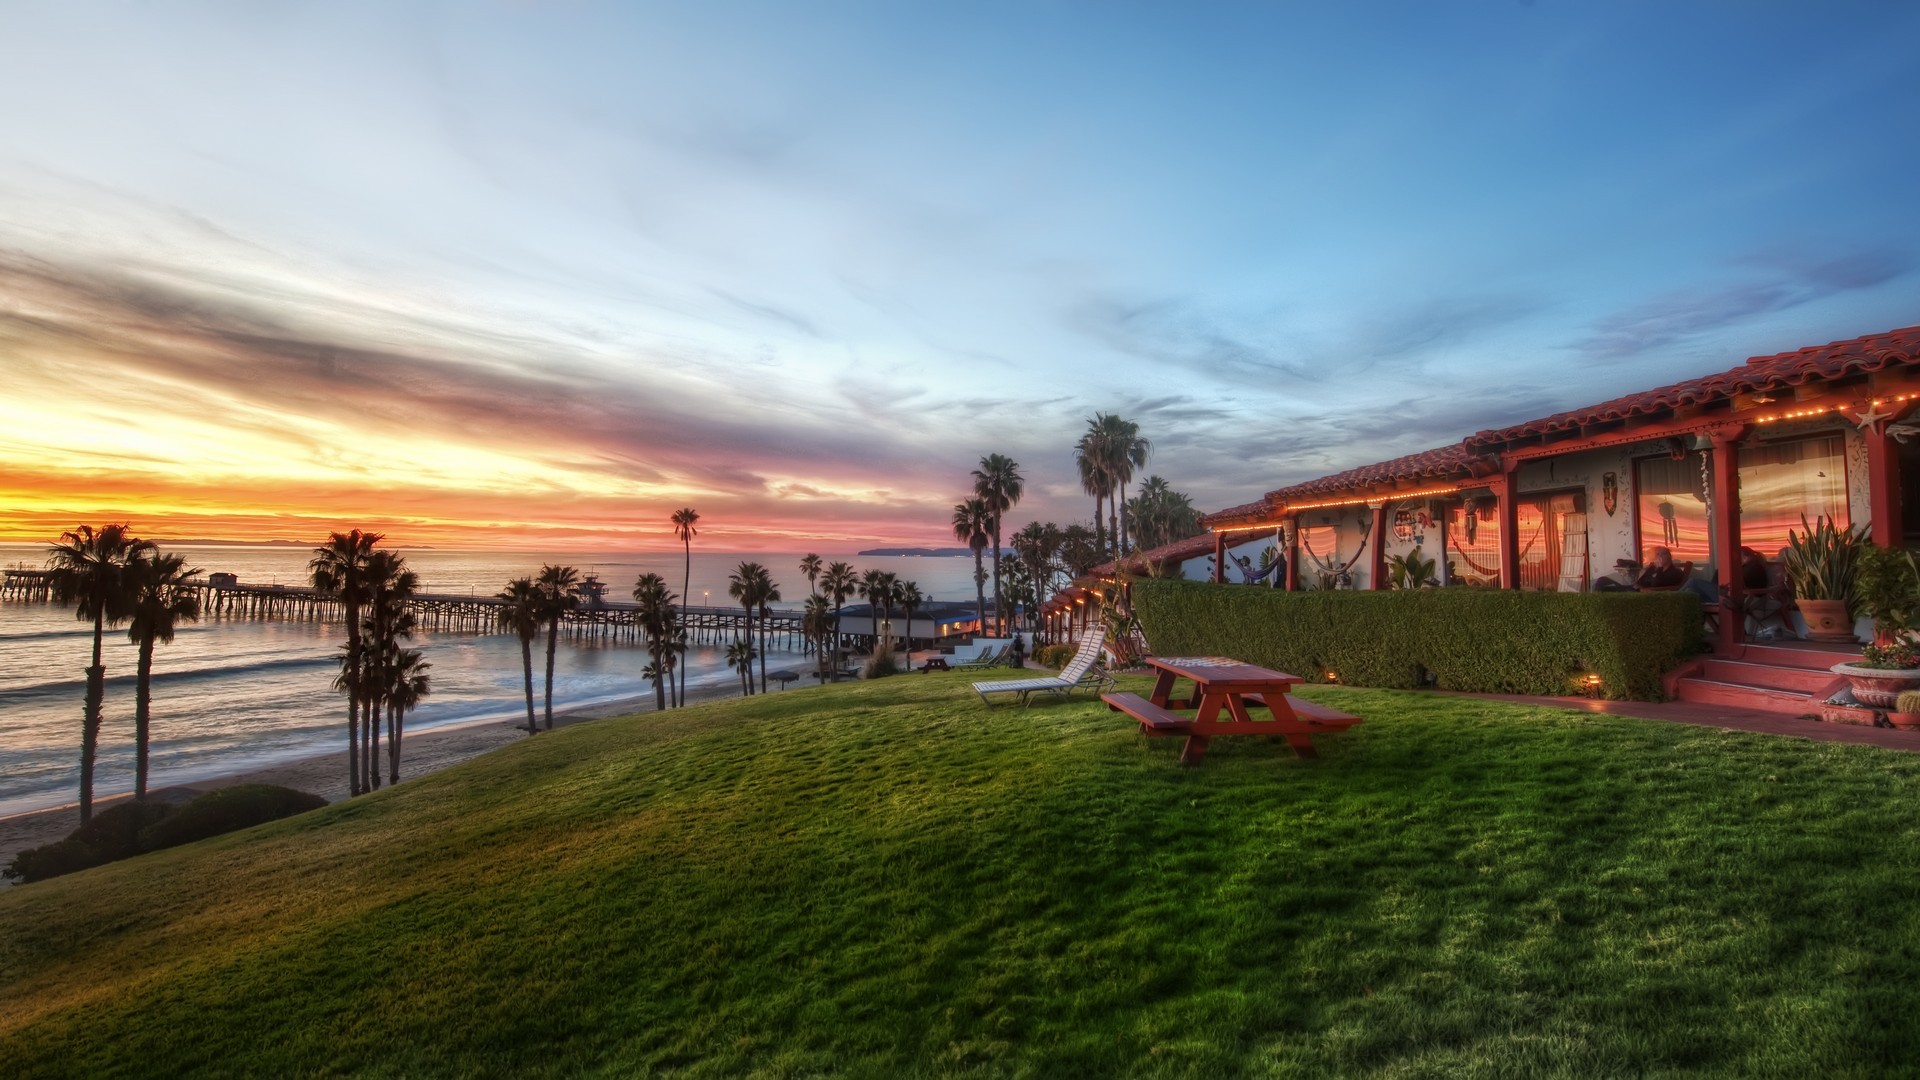 General 1920x1080 beach Beachcomber Inn USA California outdoors grass sky palm trees sunlight deck chairs